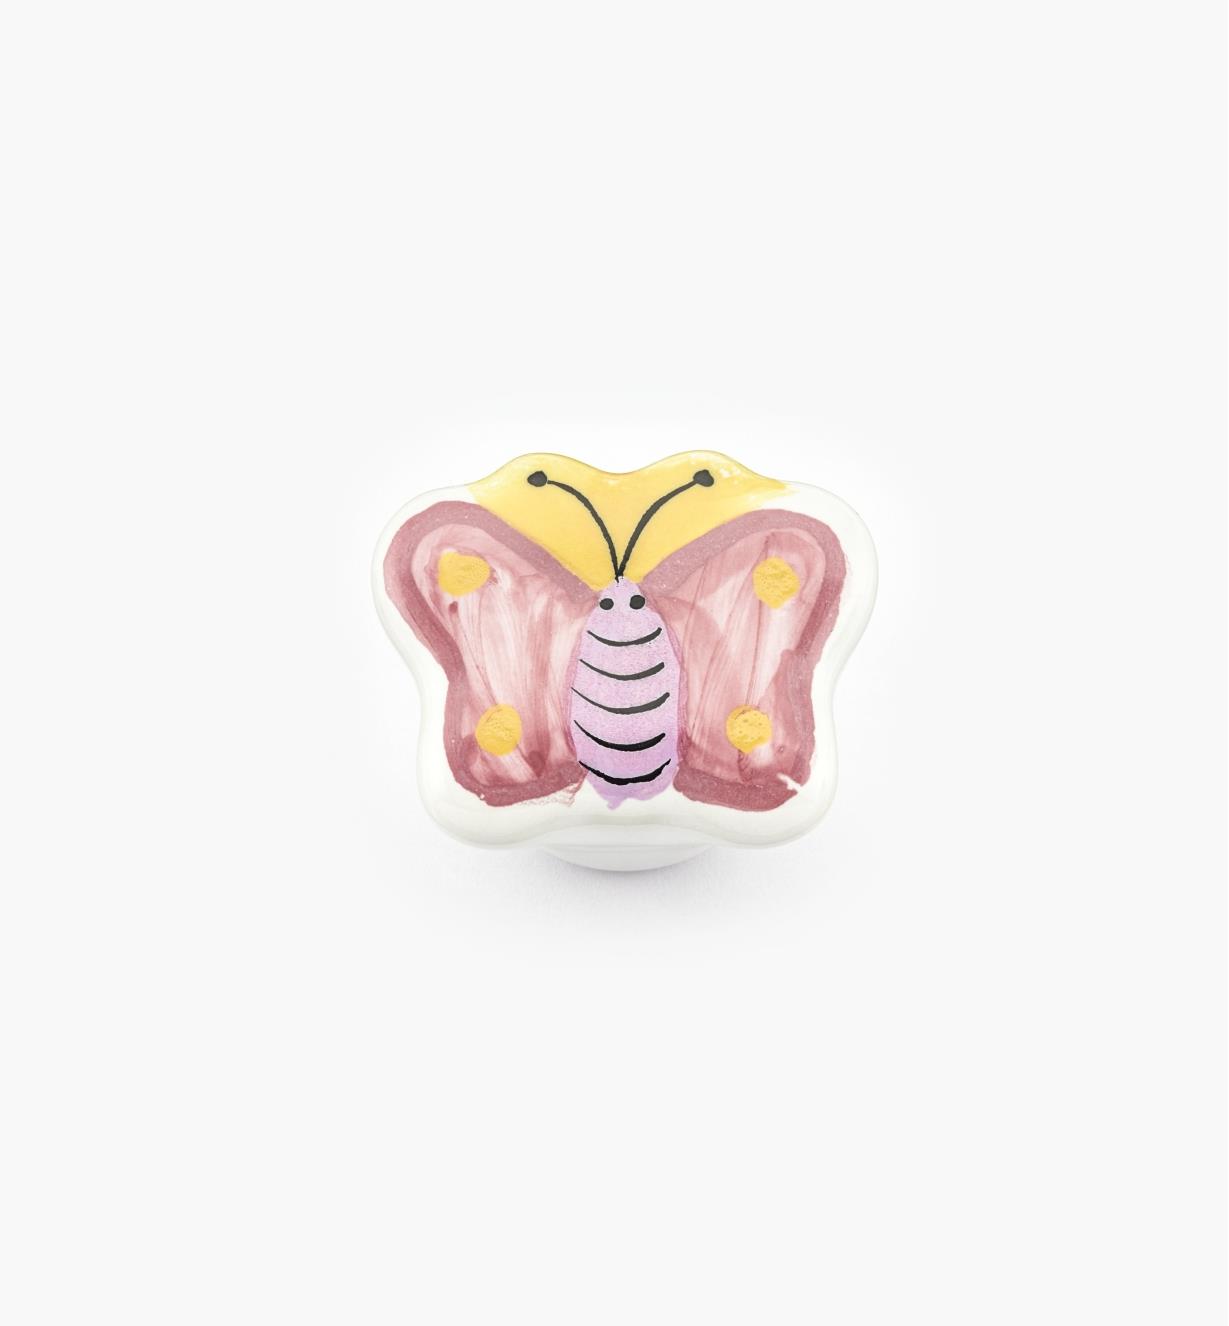 00W5322 - 1 5/8" x 1 1/4" Butterfly Ceramic Knob, each